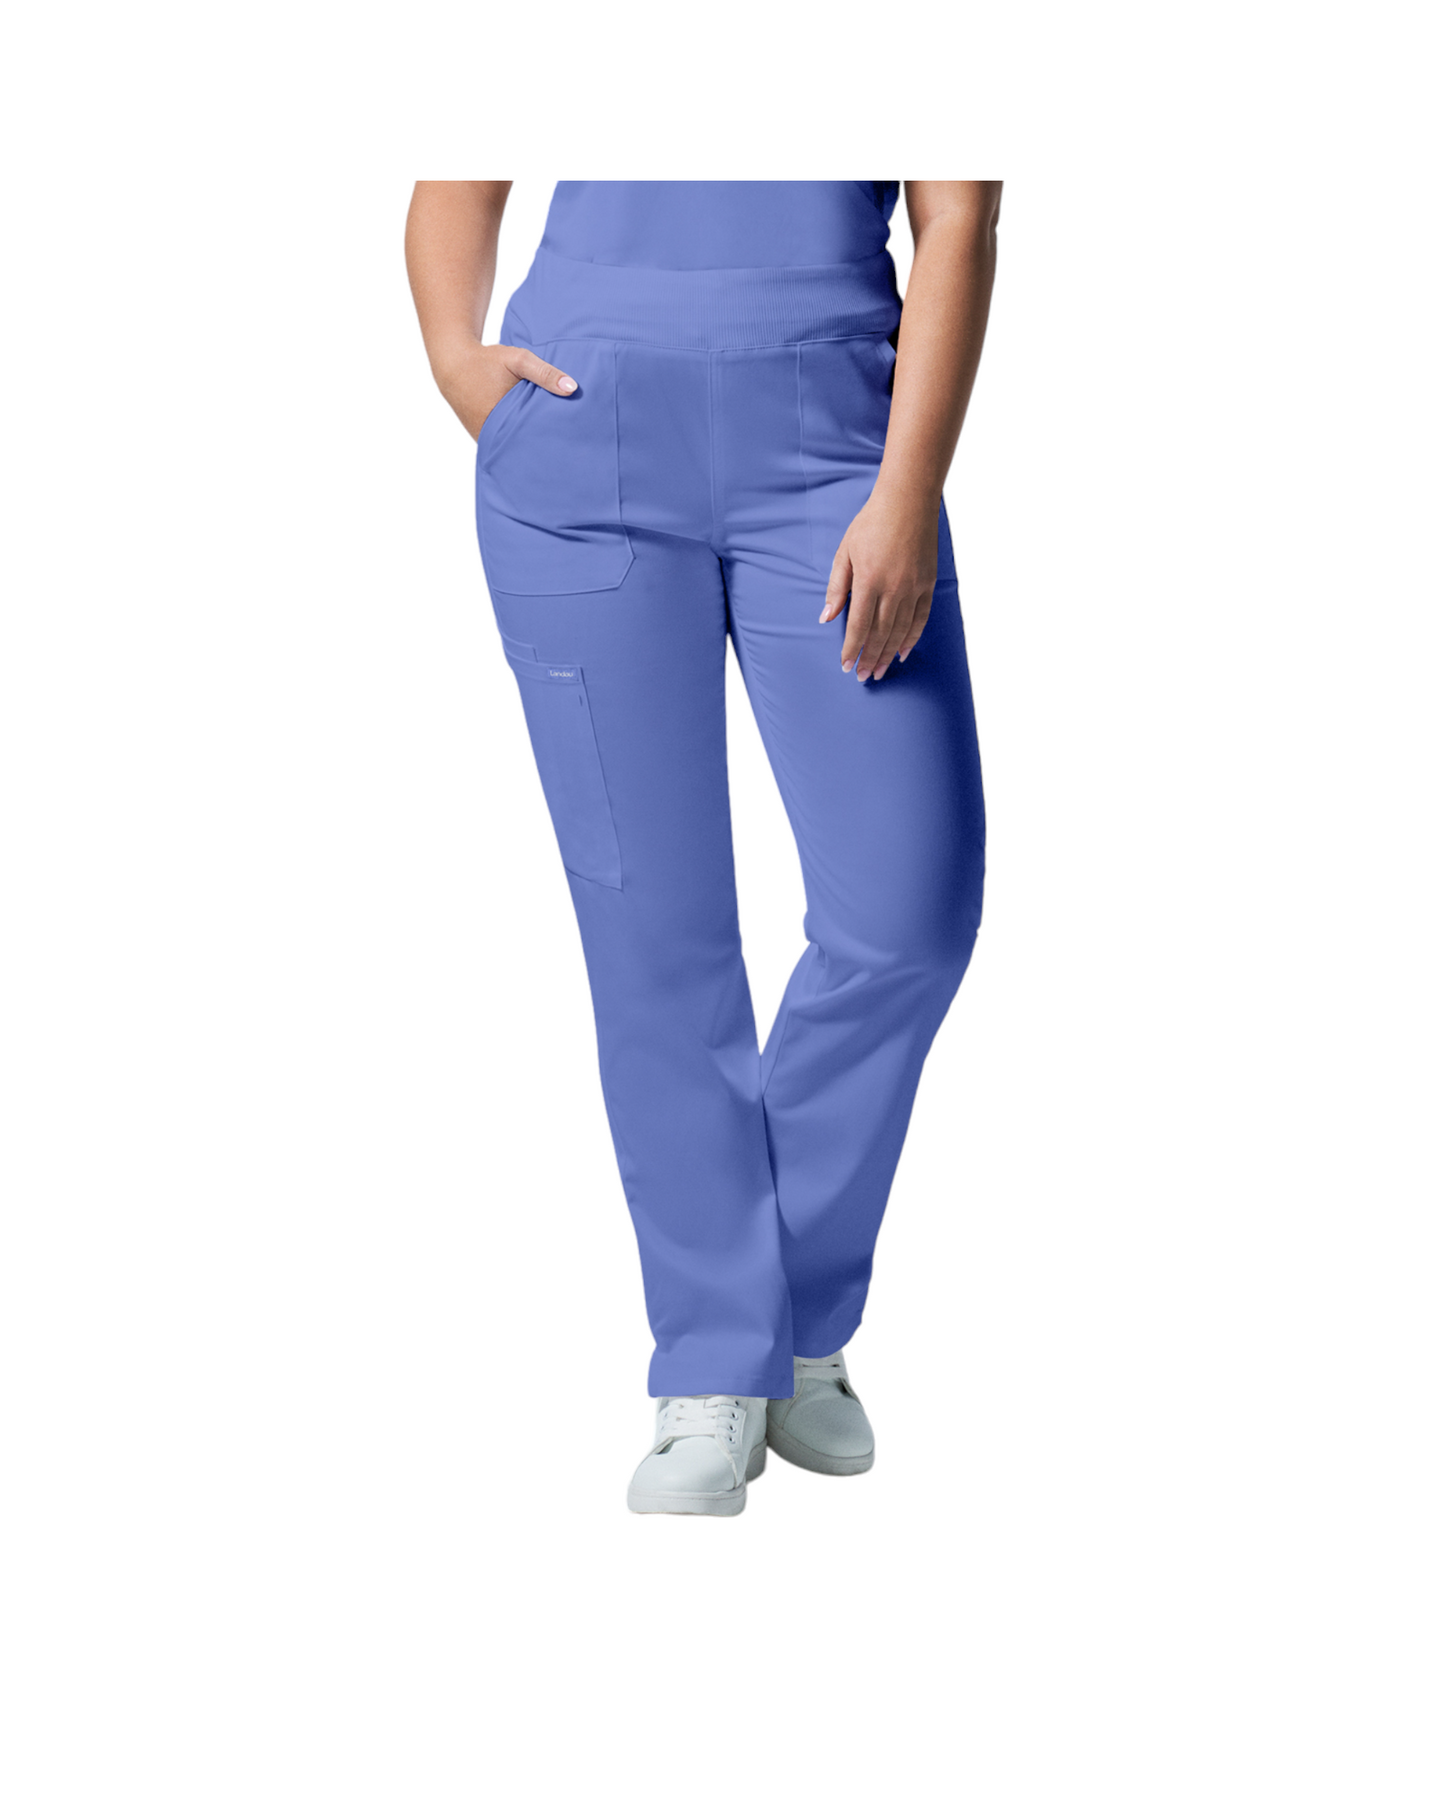 Pantalons  6 poches pour femmes Landau Proflex #LB405 couleur  Bleu ciel